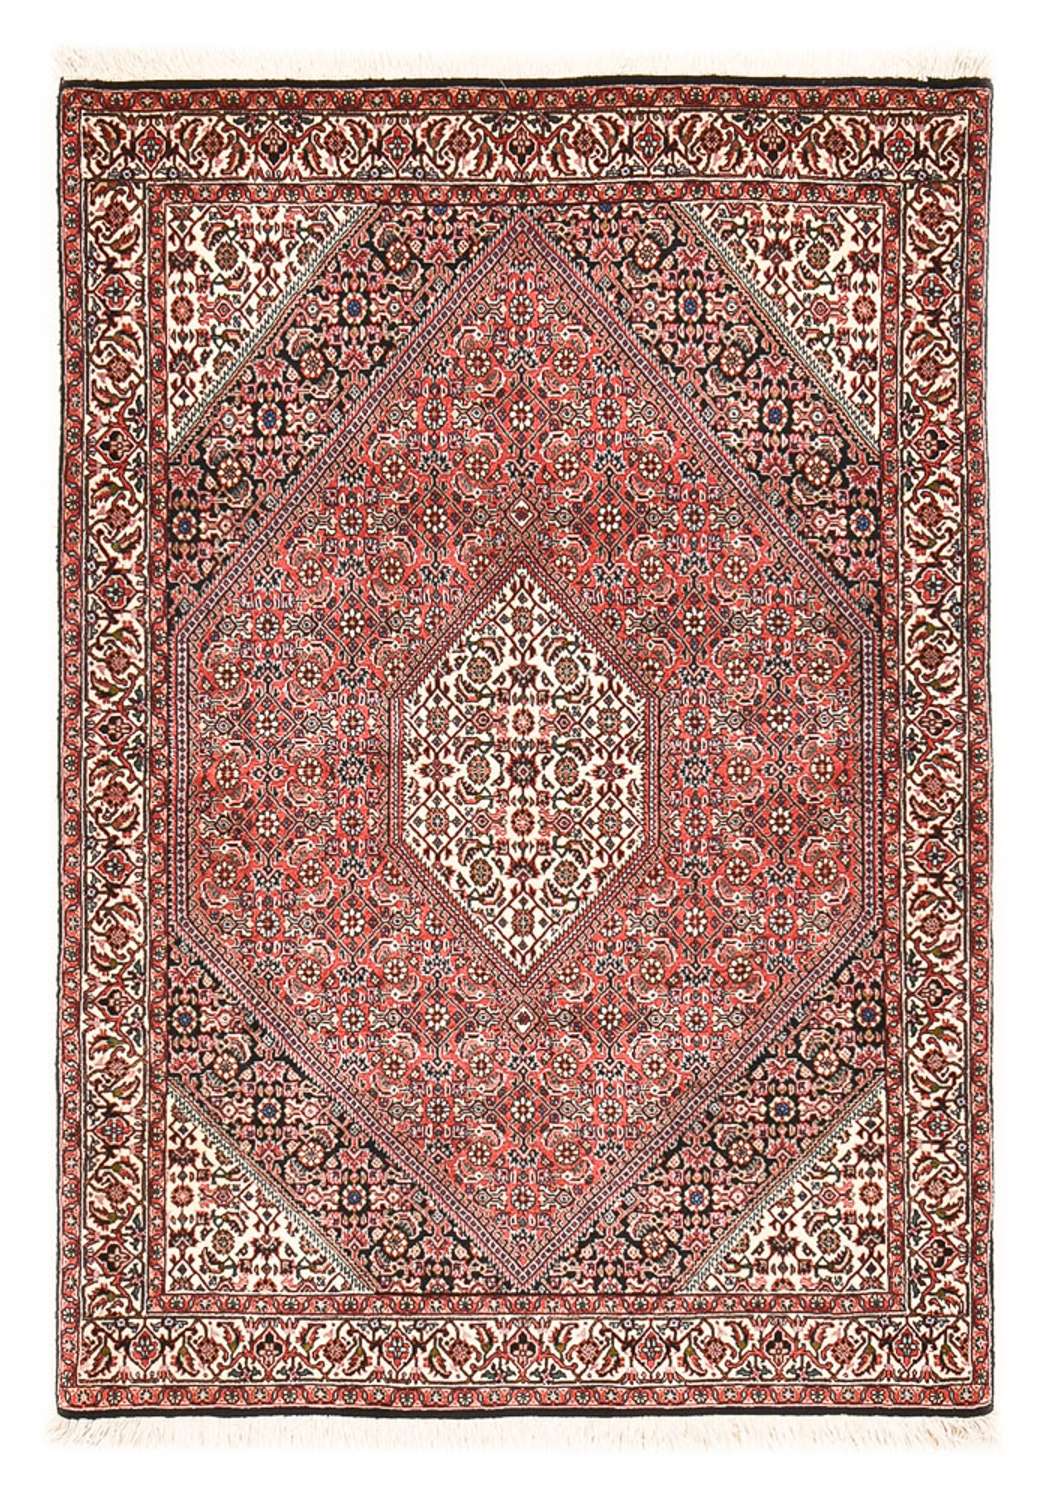 Tapis persan - Bidjar - 156 x 110 cm - rouge clair